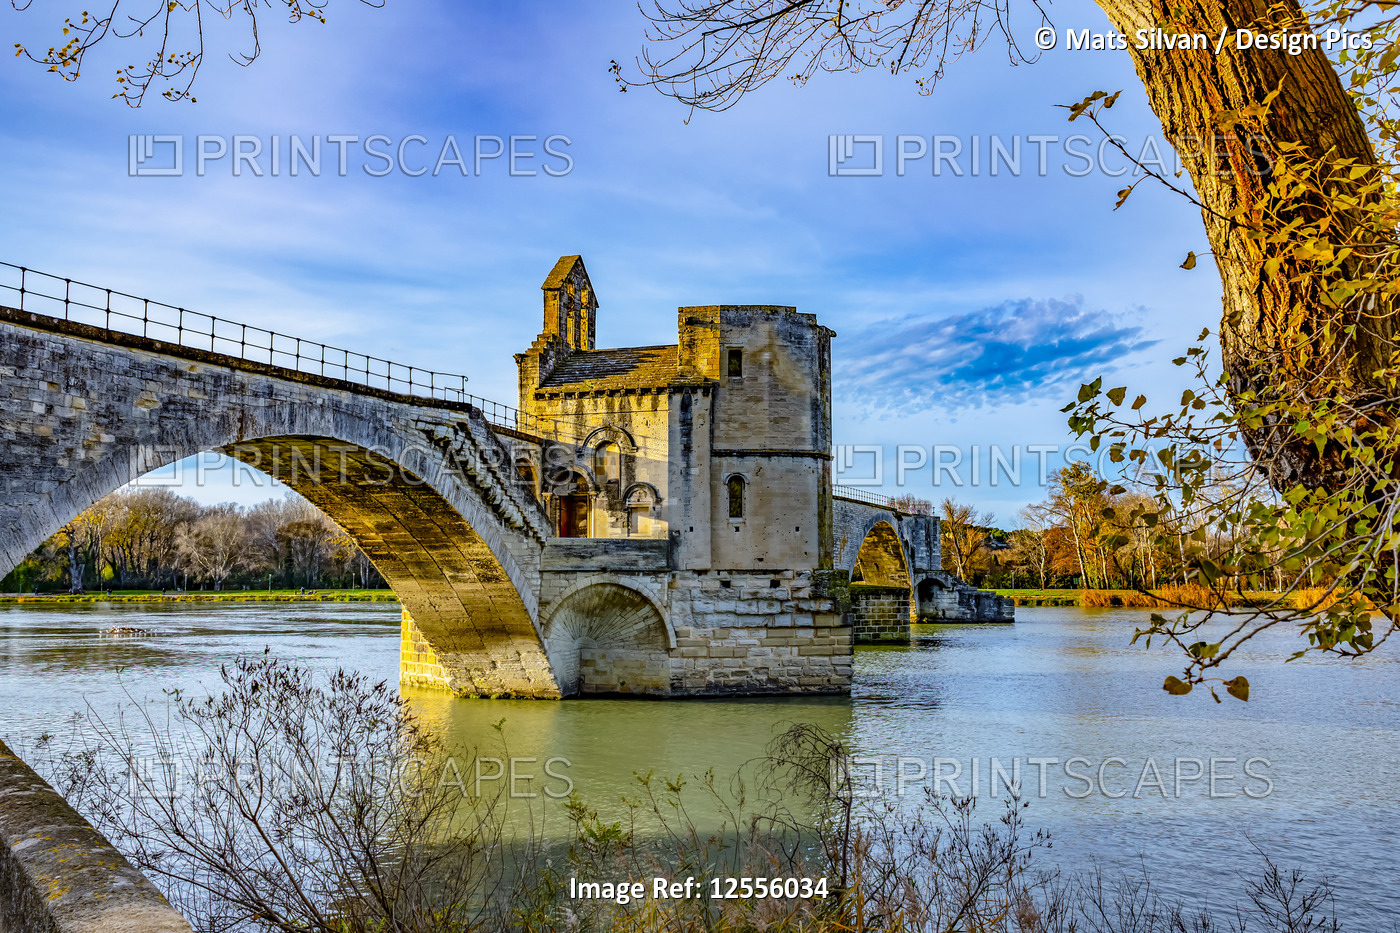 Pont Saint-Benezet; Avignon, Provence Alpes Cote d'Azur, France